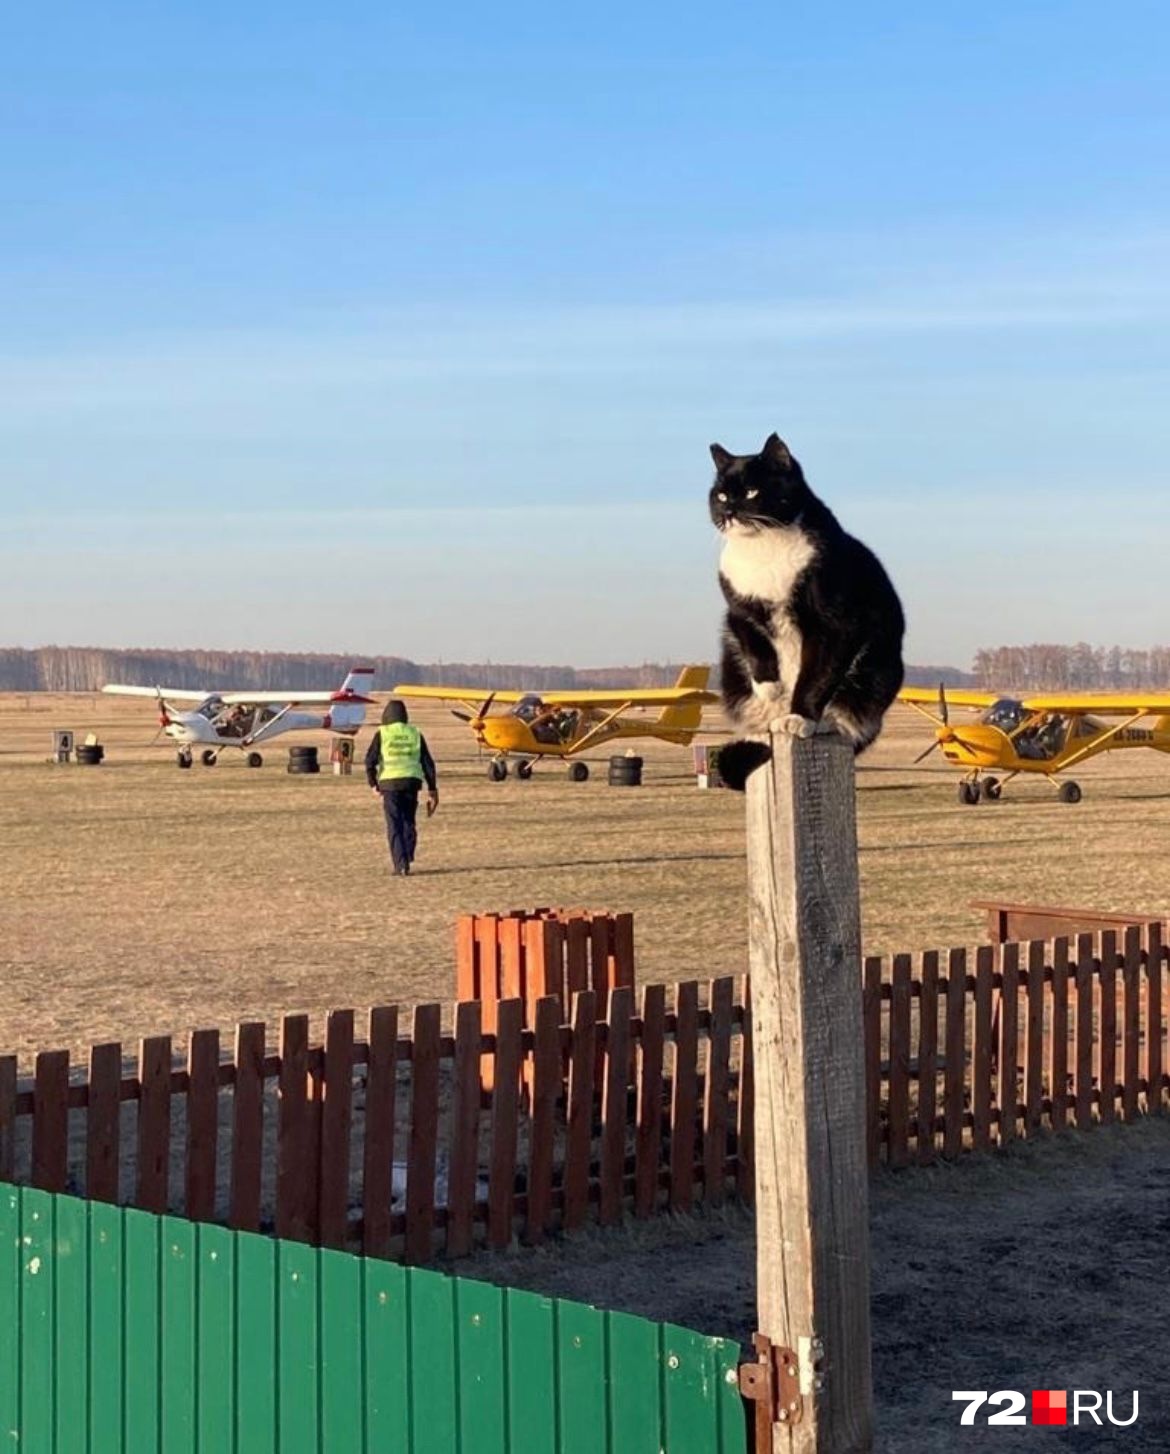 Этот котик живет на аэродроме и следит за порядком. Посмотрите, какой у него грозный взгляд